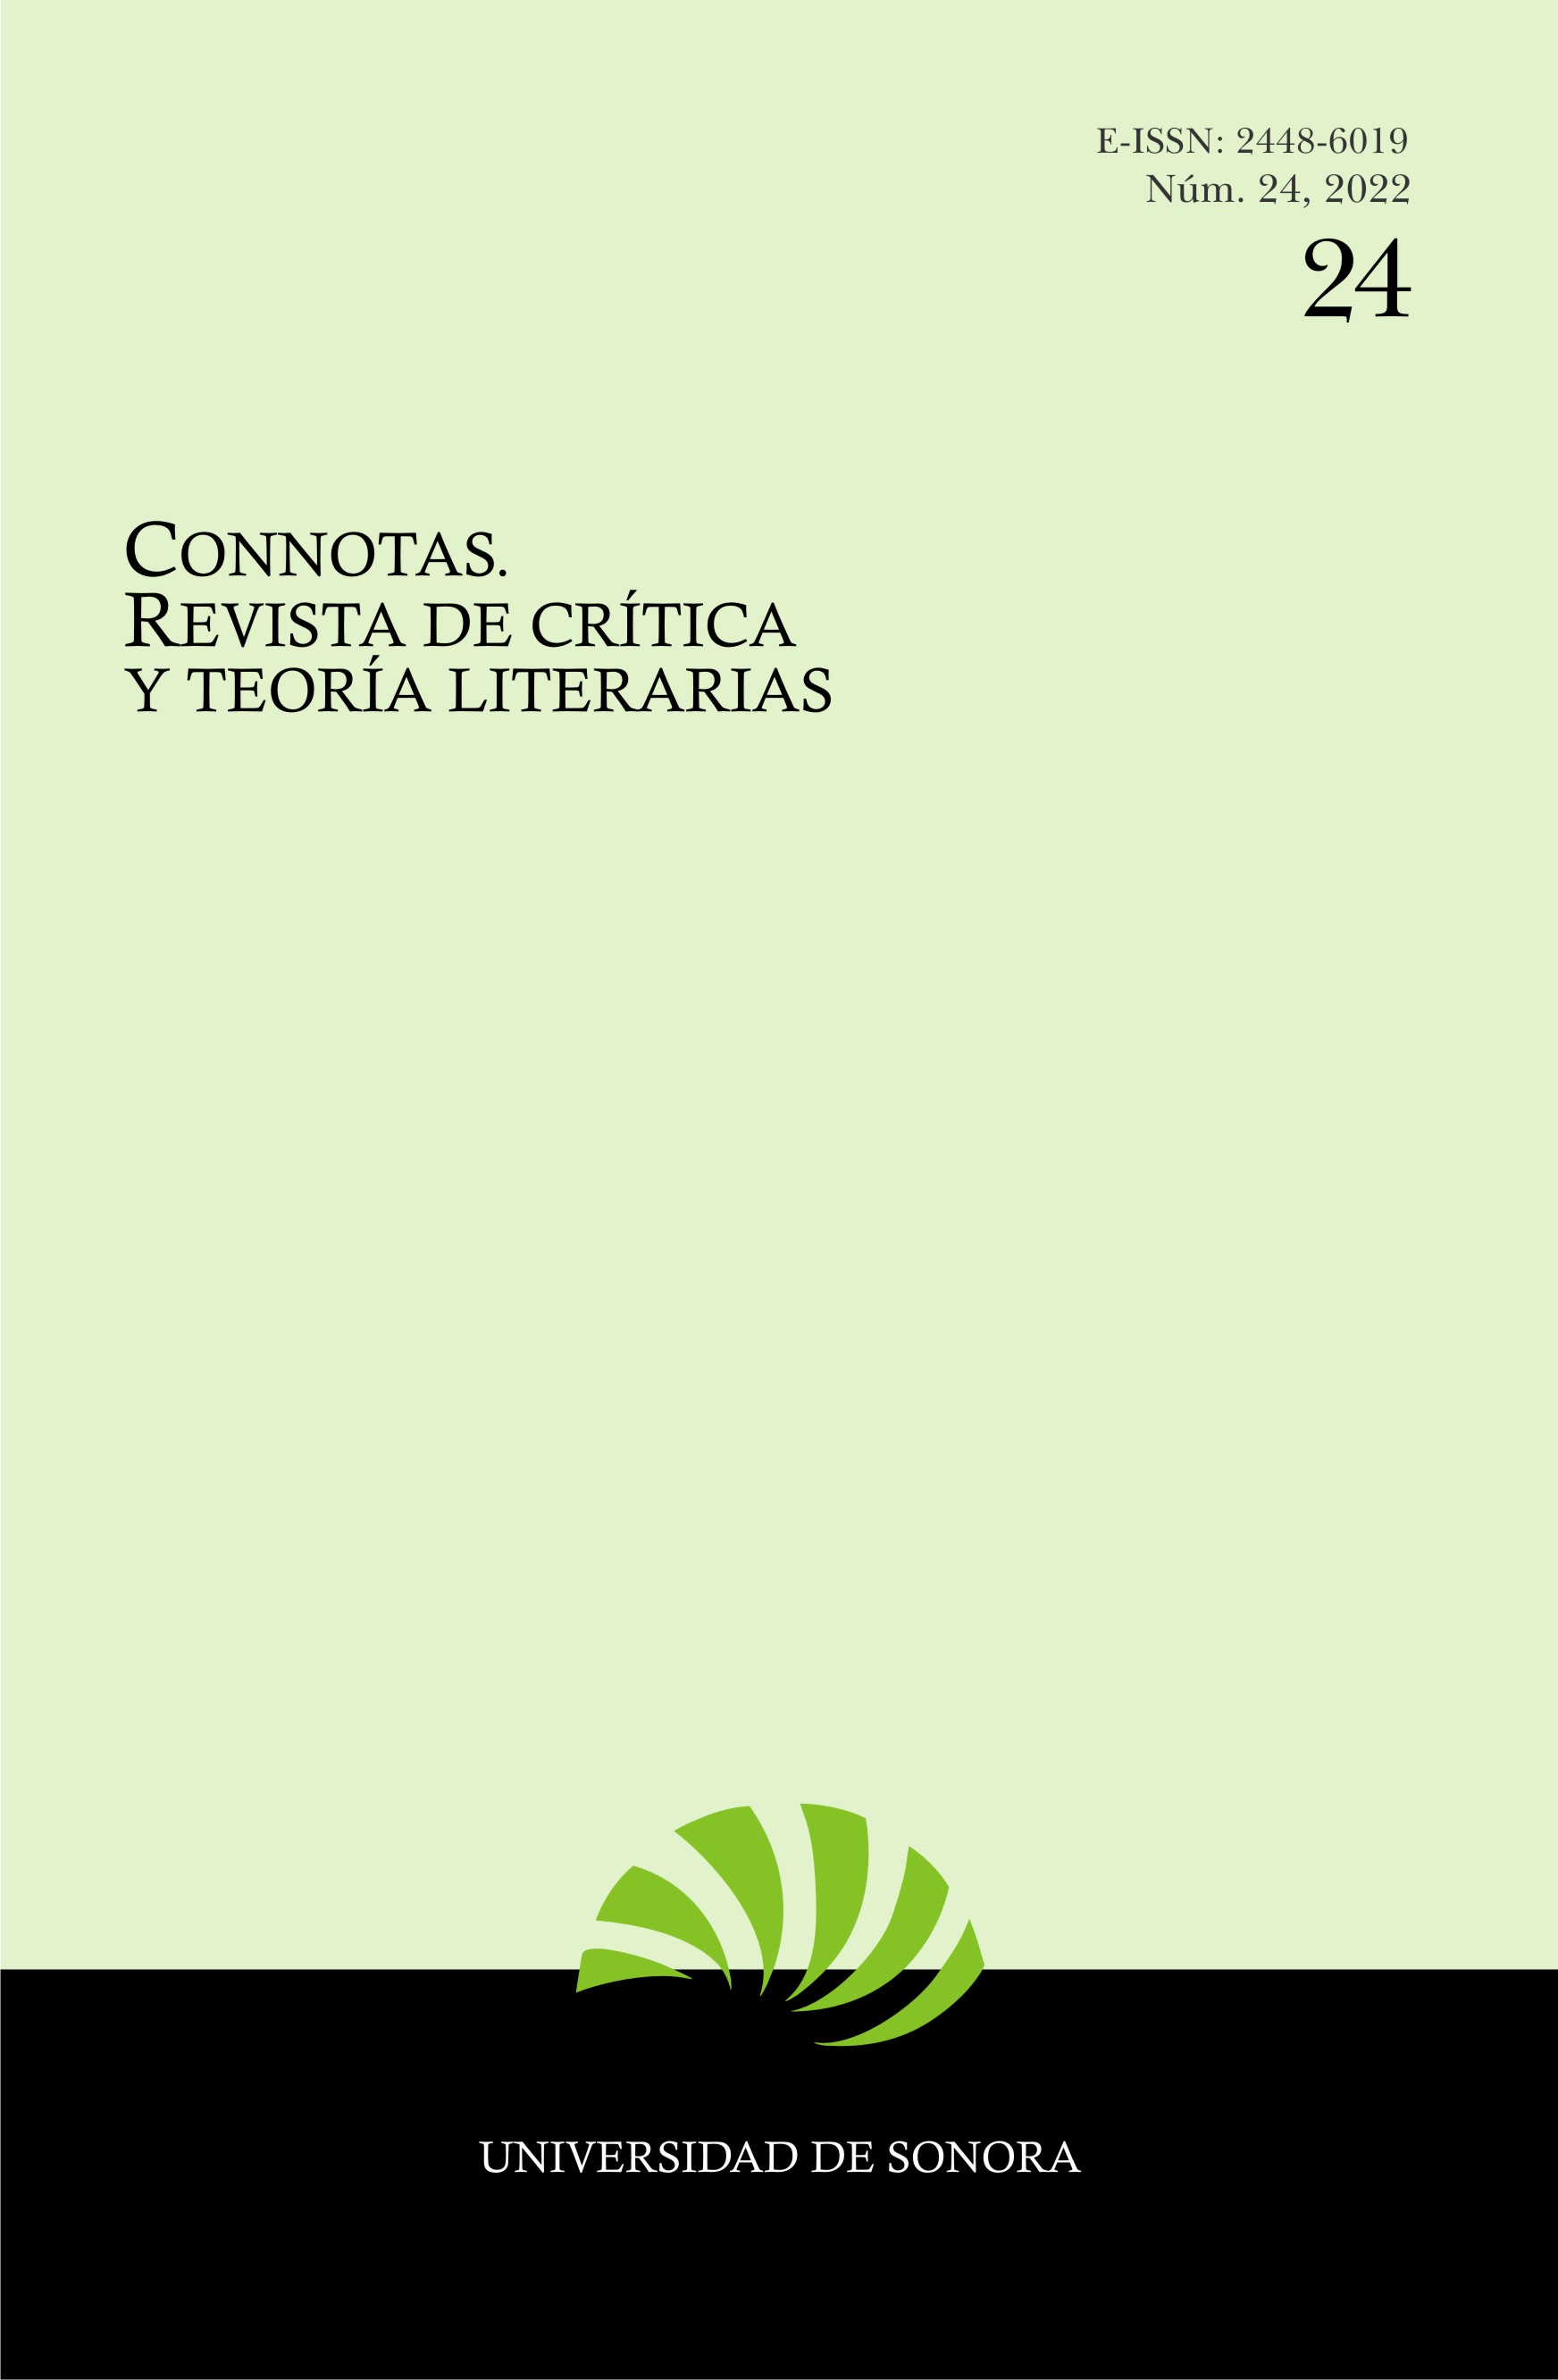 Portada del número 24 de Connotas. Revista de crítica y teoría literarias, con ISSN electrónico. Se especifica número, año de publicación e institución editora: la Universidad de Sonora.